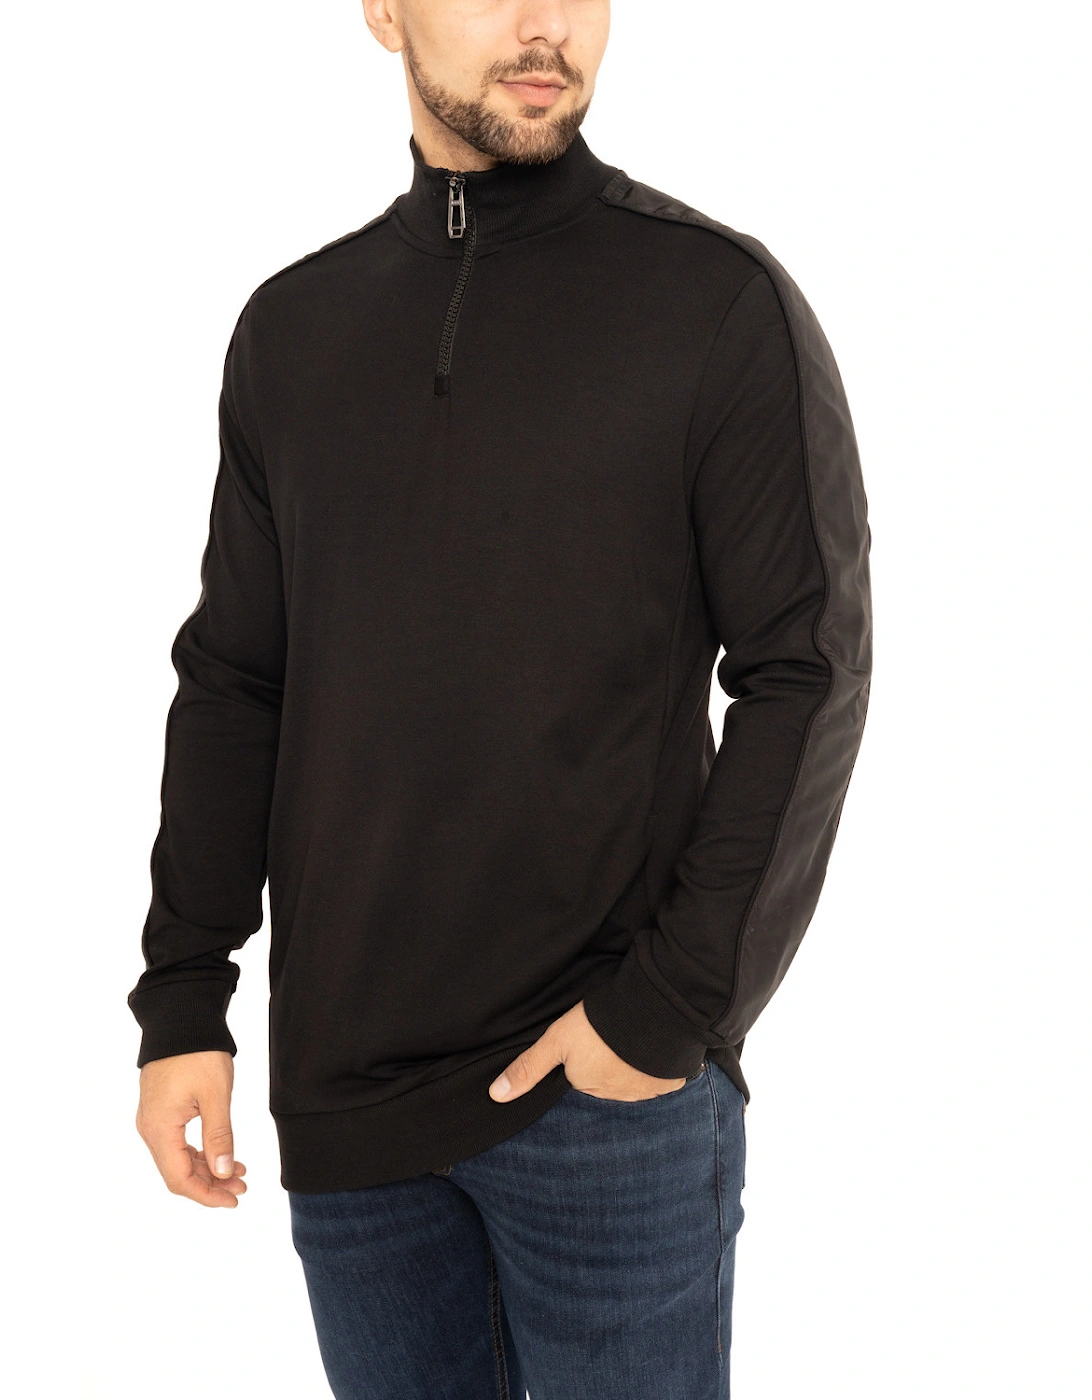 Joop Mens Half Zip Taped Sleeve Sweatshirt (Black)